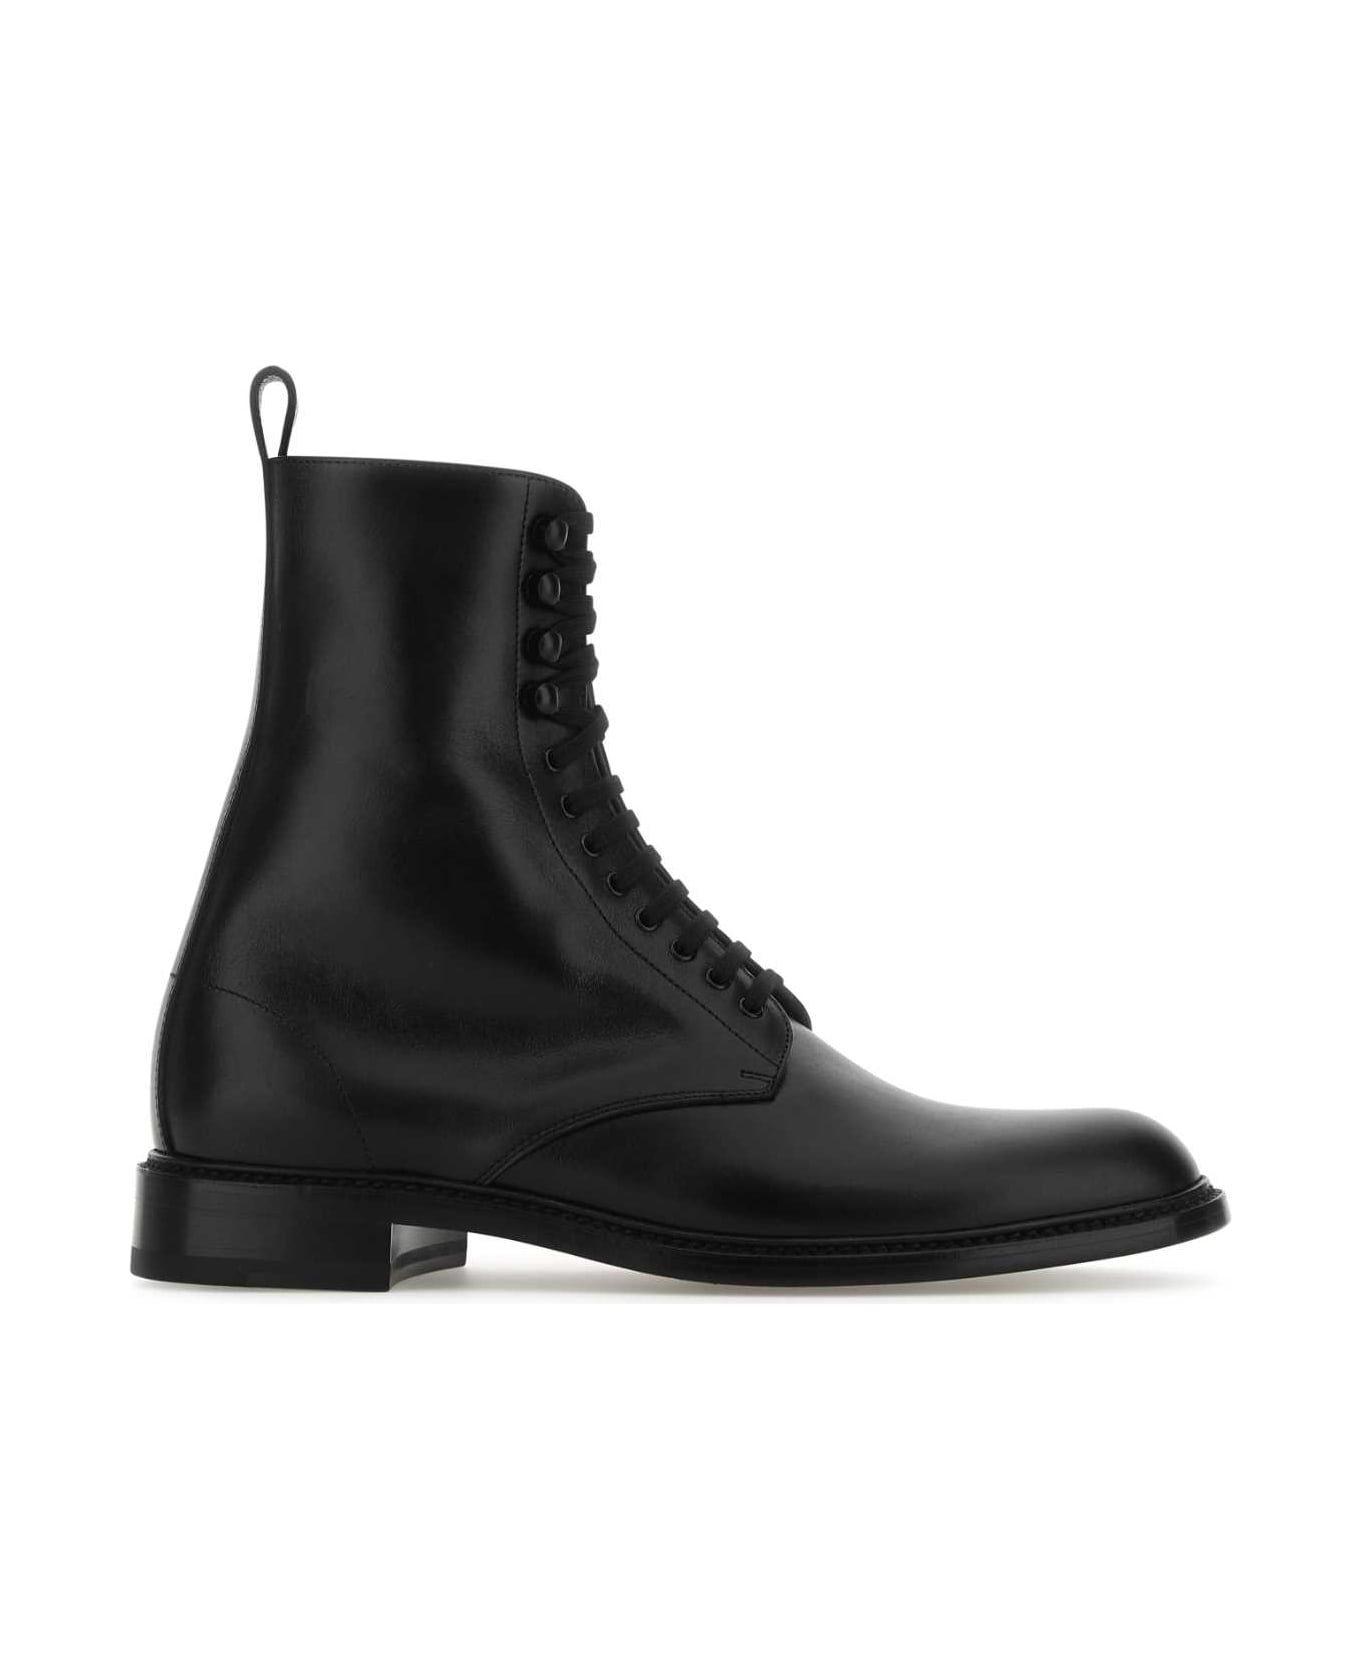 Saint Laurent Army Ankle Boots - Black